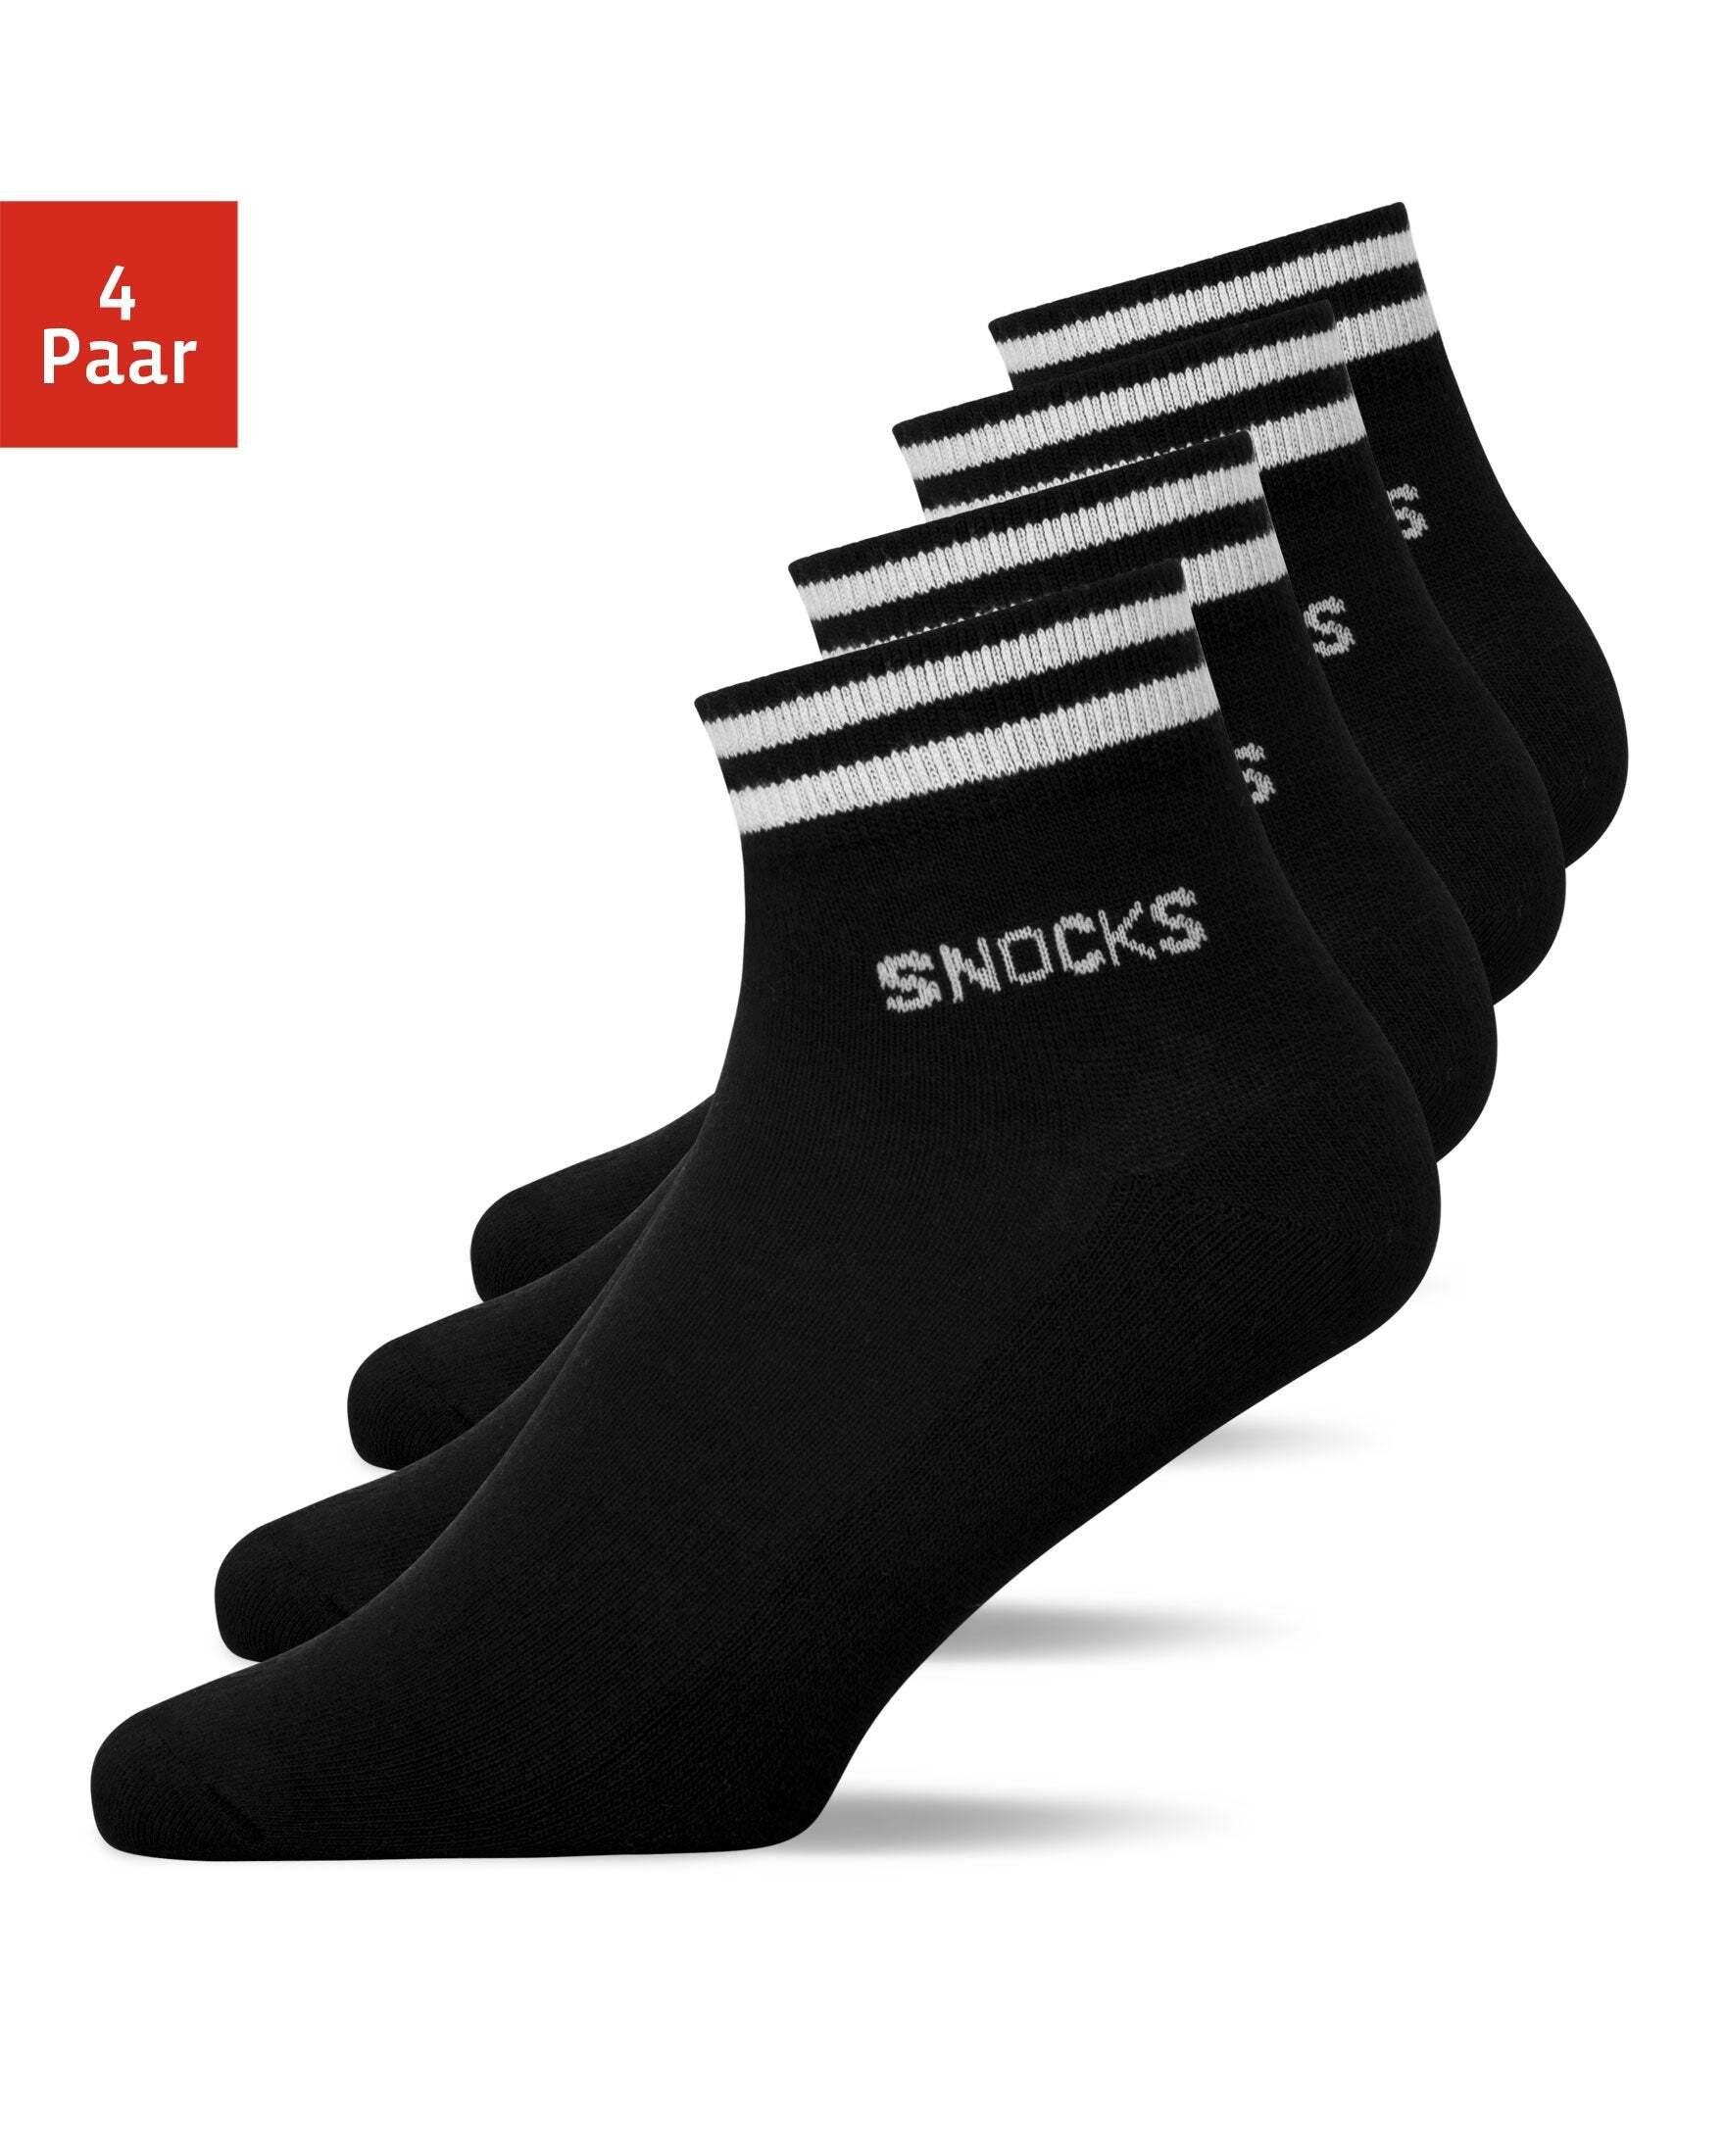 REEBOK THIN SOCKS Herren Sneaker Sport Socken Laufsocken Logo schwarz 3-9-Paar 